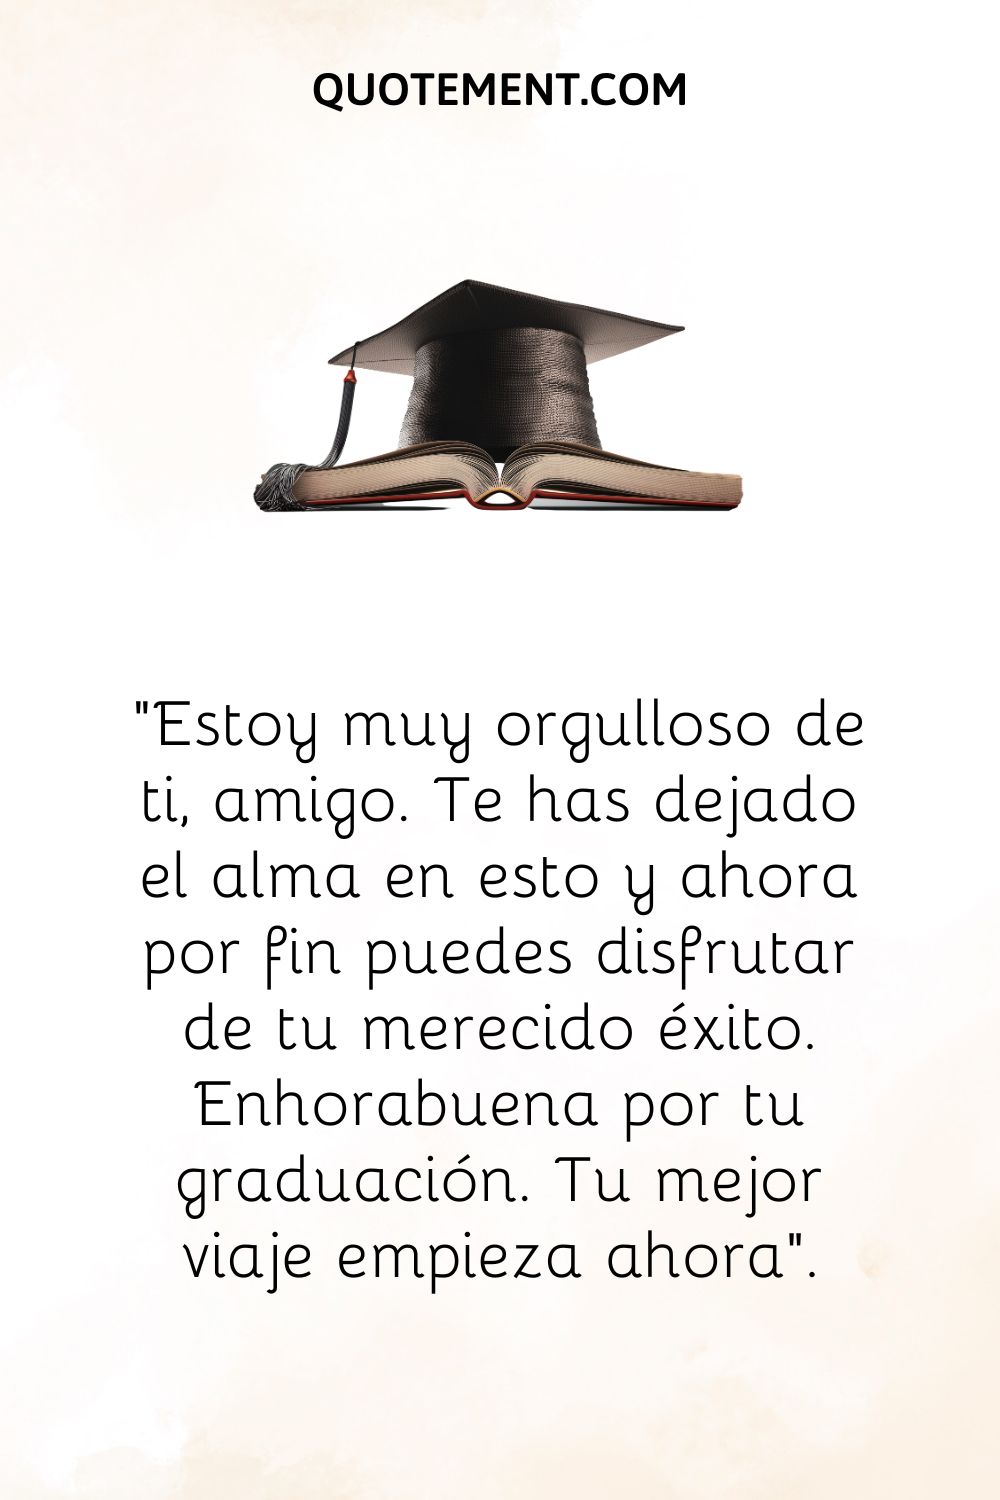 Cálido deseo de feliz graduación y sombrero de graduación en libro.